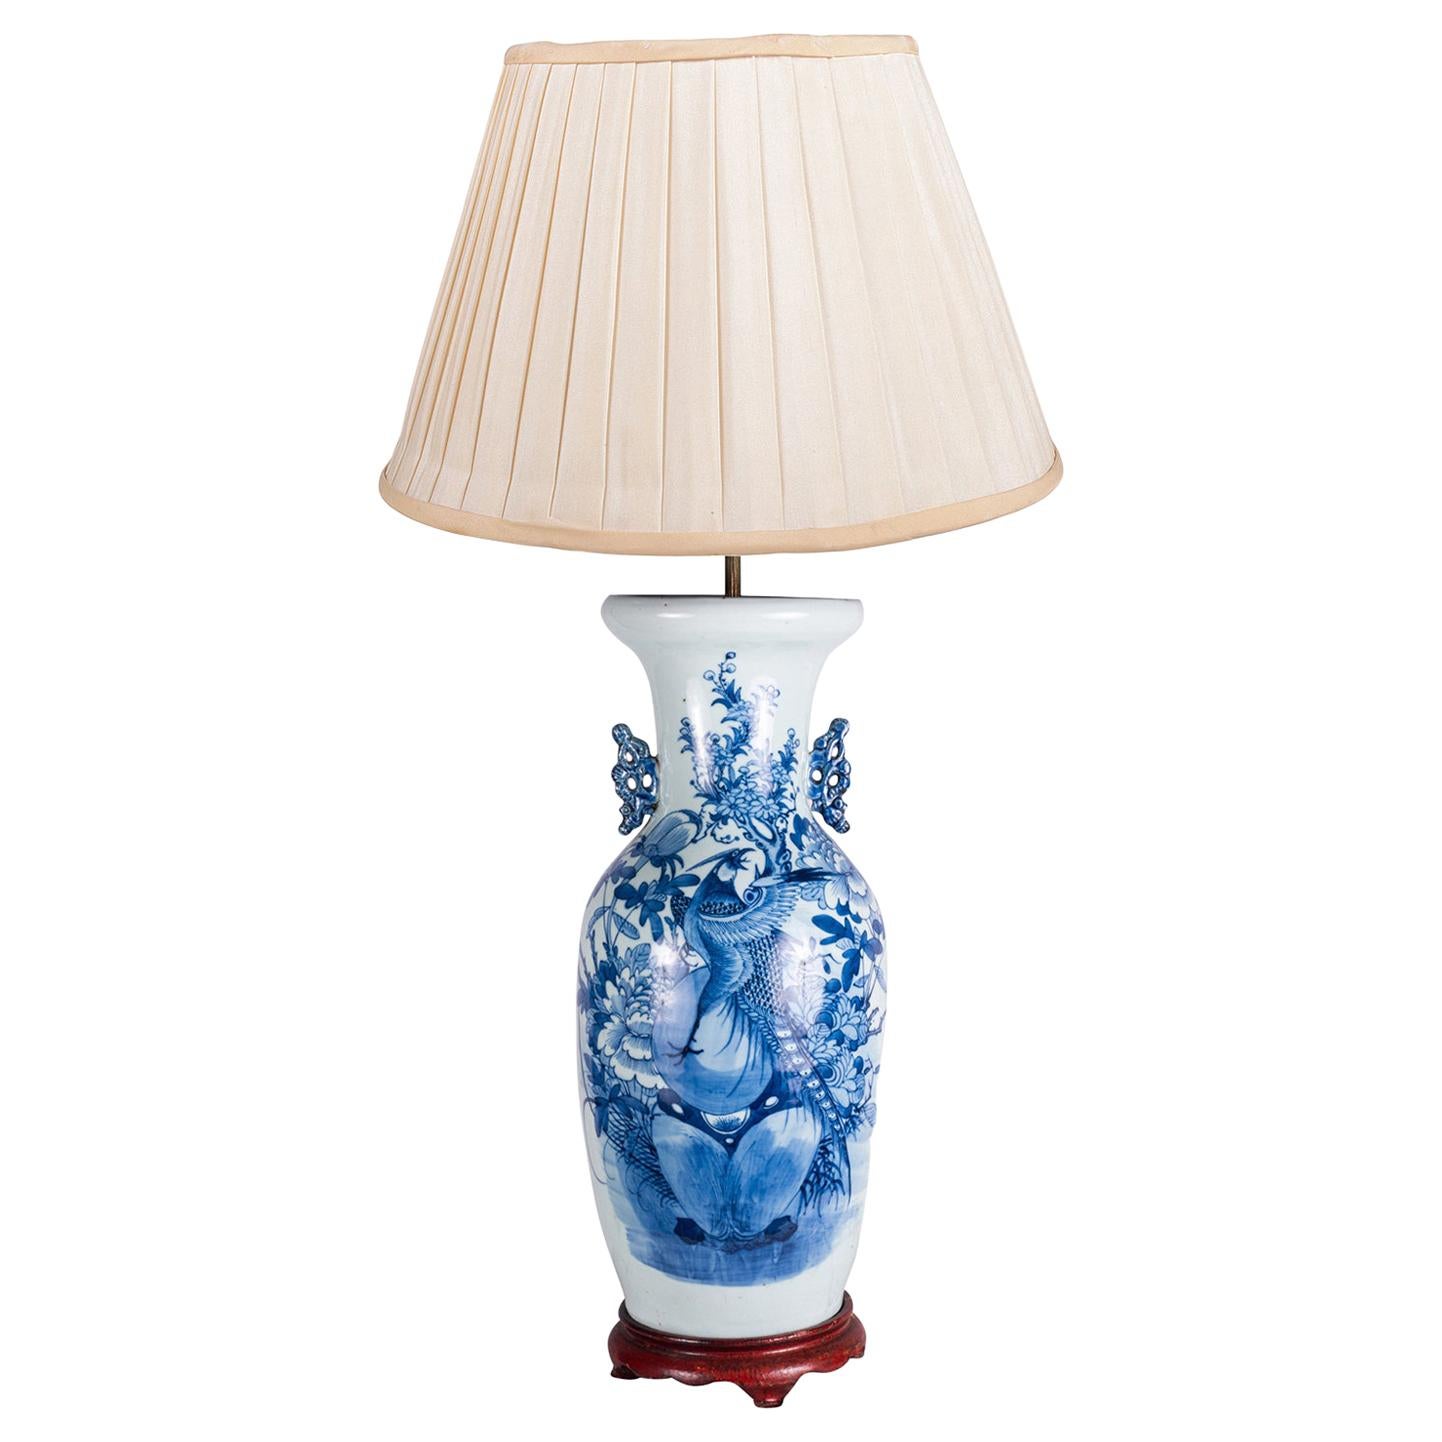 Chinesische blau-weiße Vase oder Lampe aus dem 19. Jahrhundert